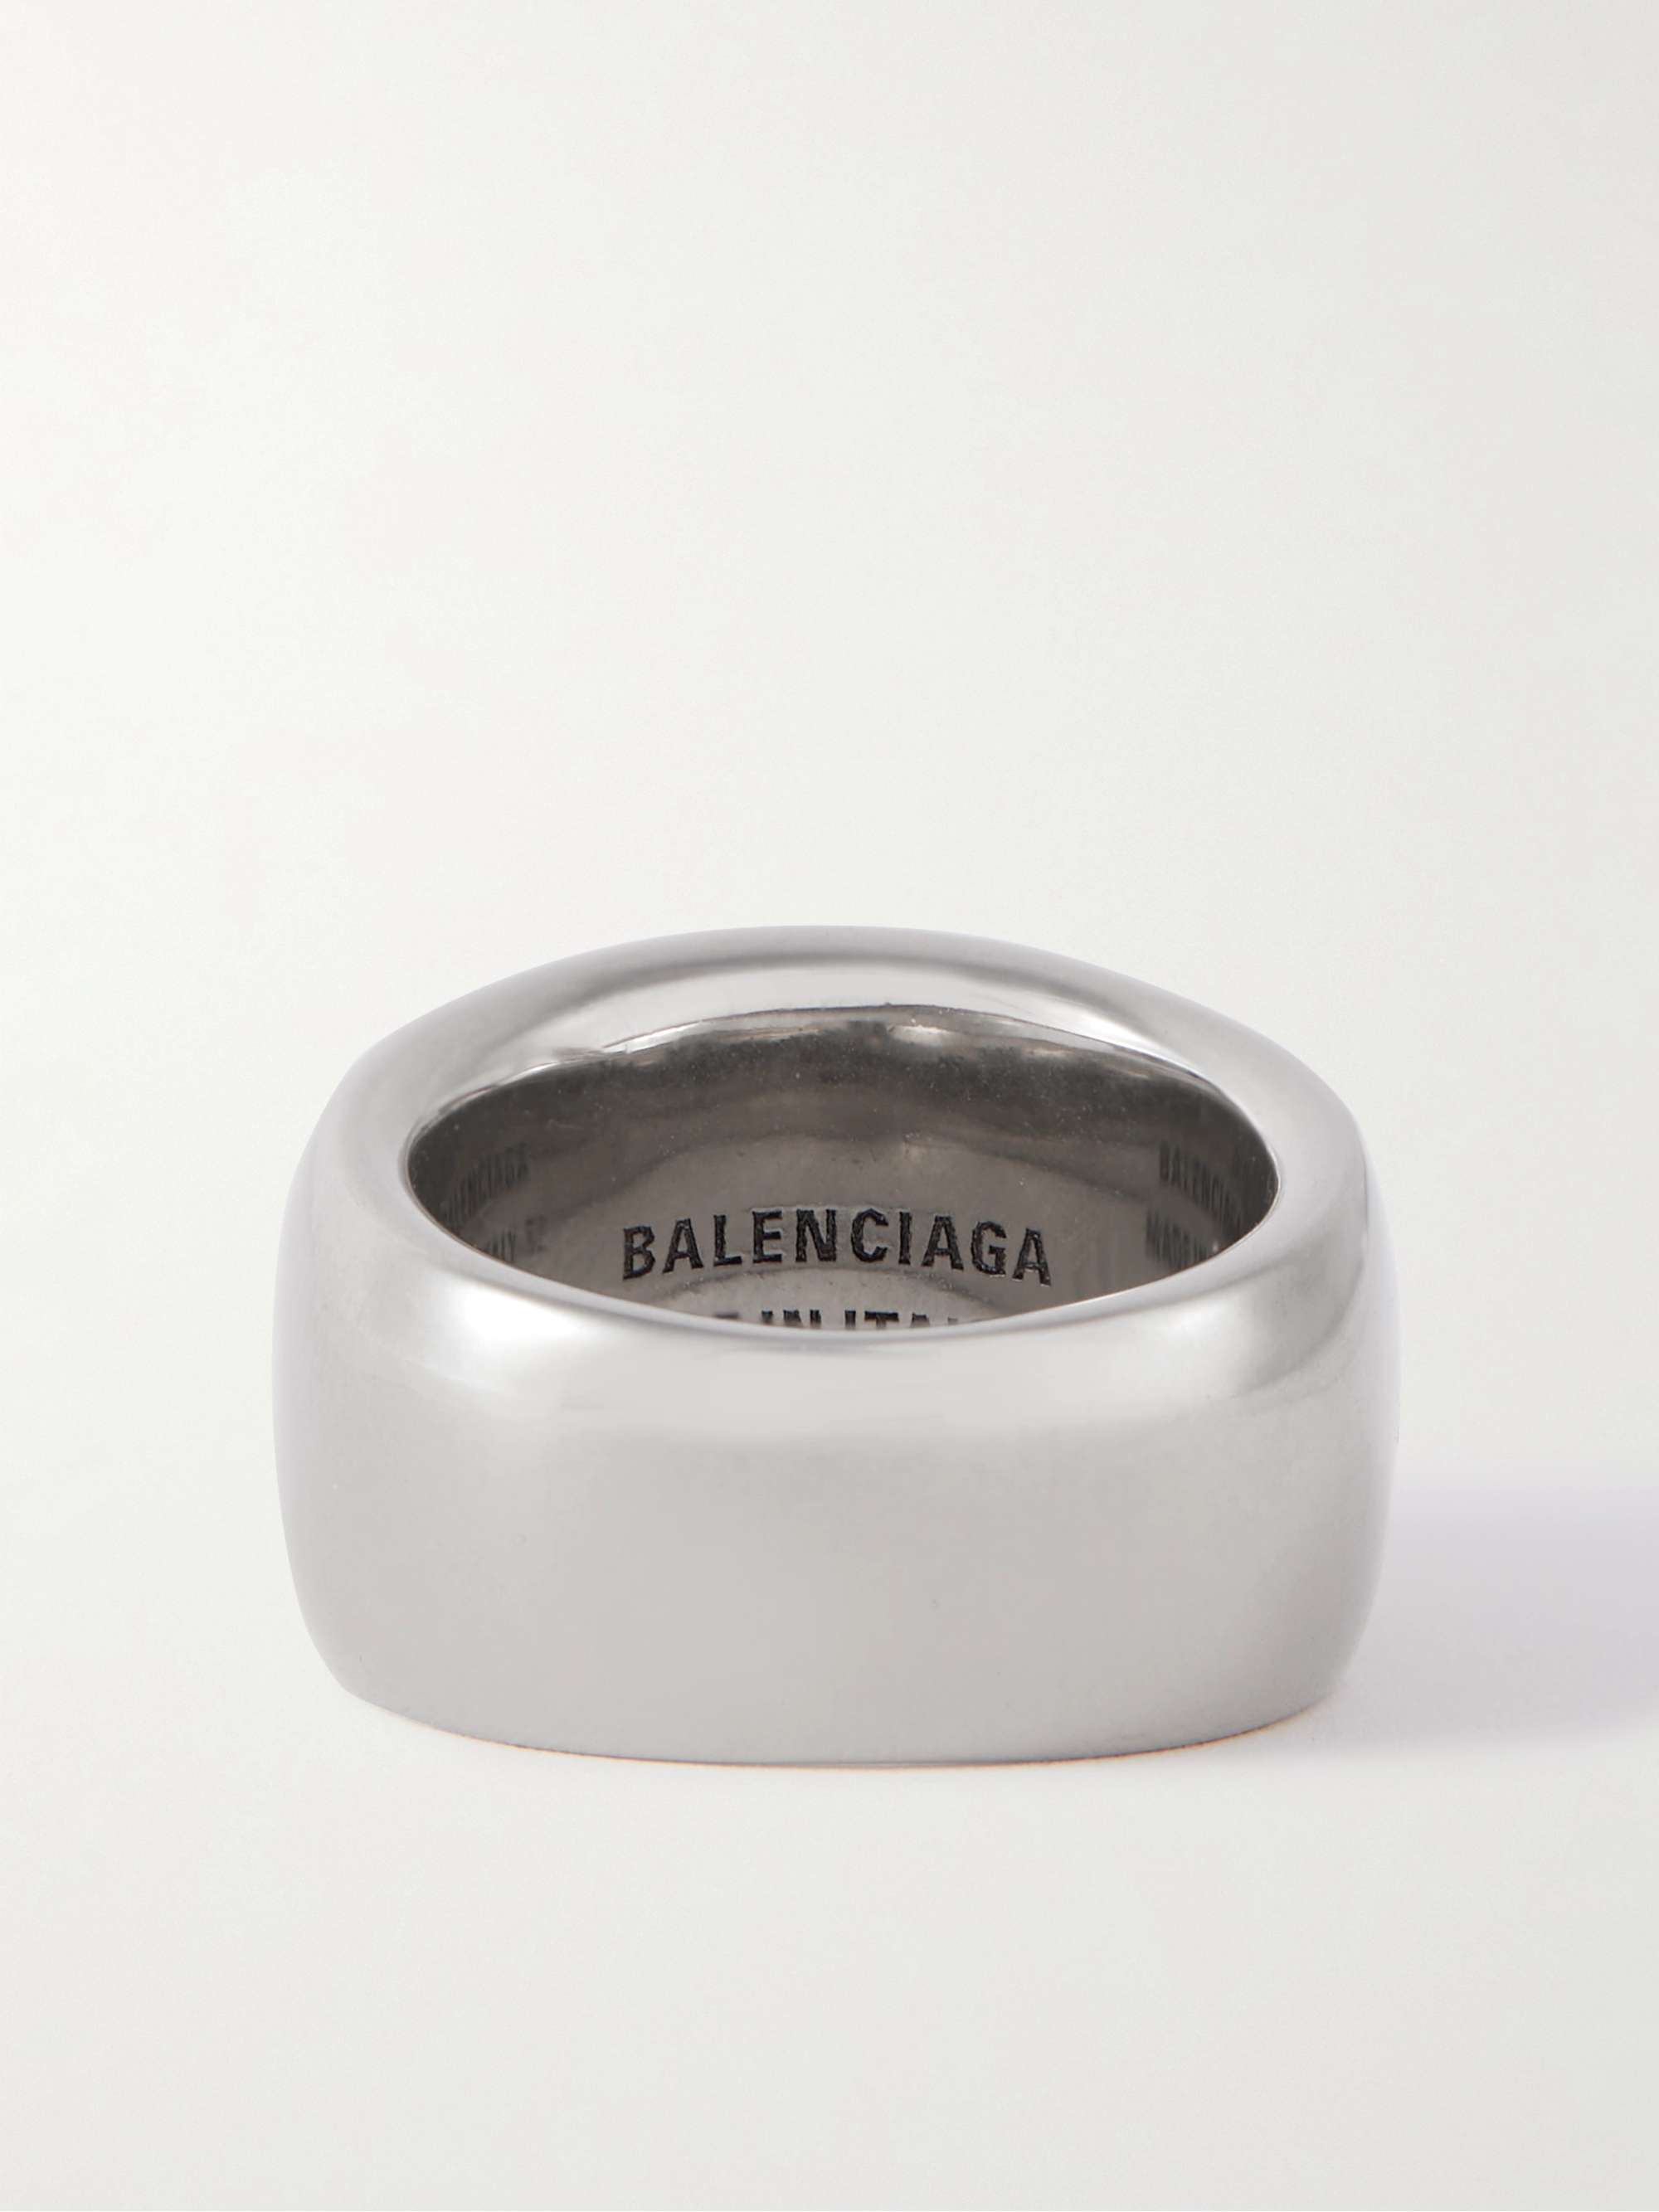 BALENCIAGA Silver-Tone Ring | MR PORTER